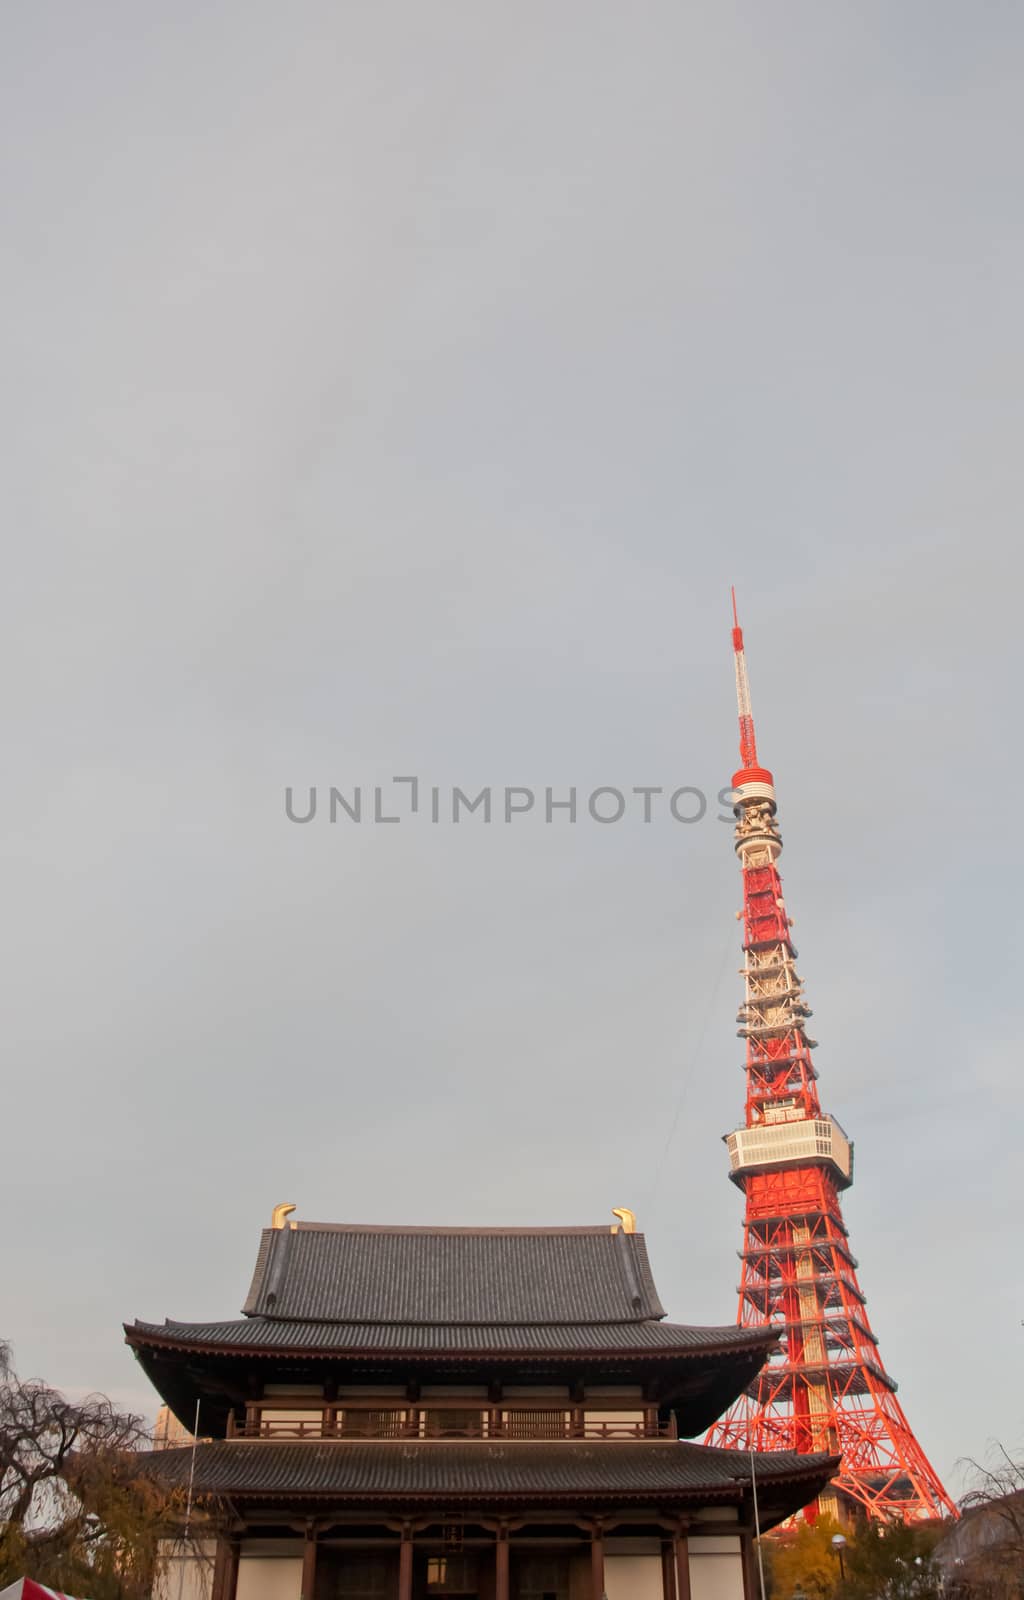 TOKYO, JAPAN - DECEMBER 1, 2018: Zojo-ji Budhist temple. This is by eyeofpaul